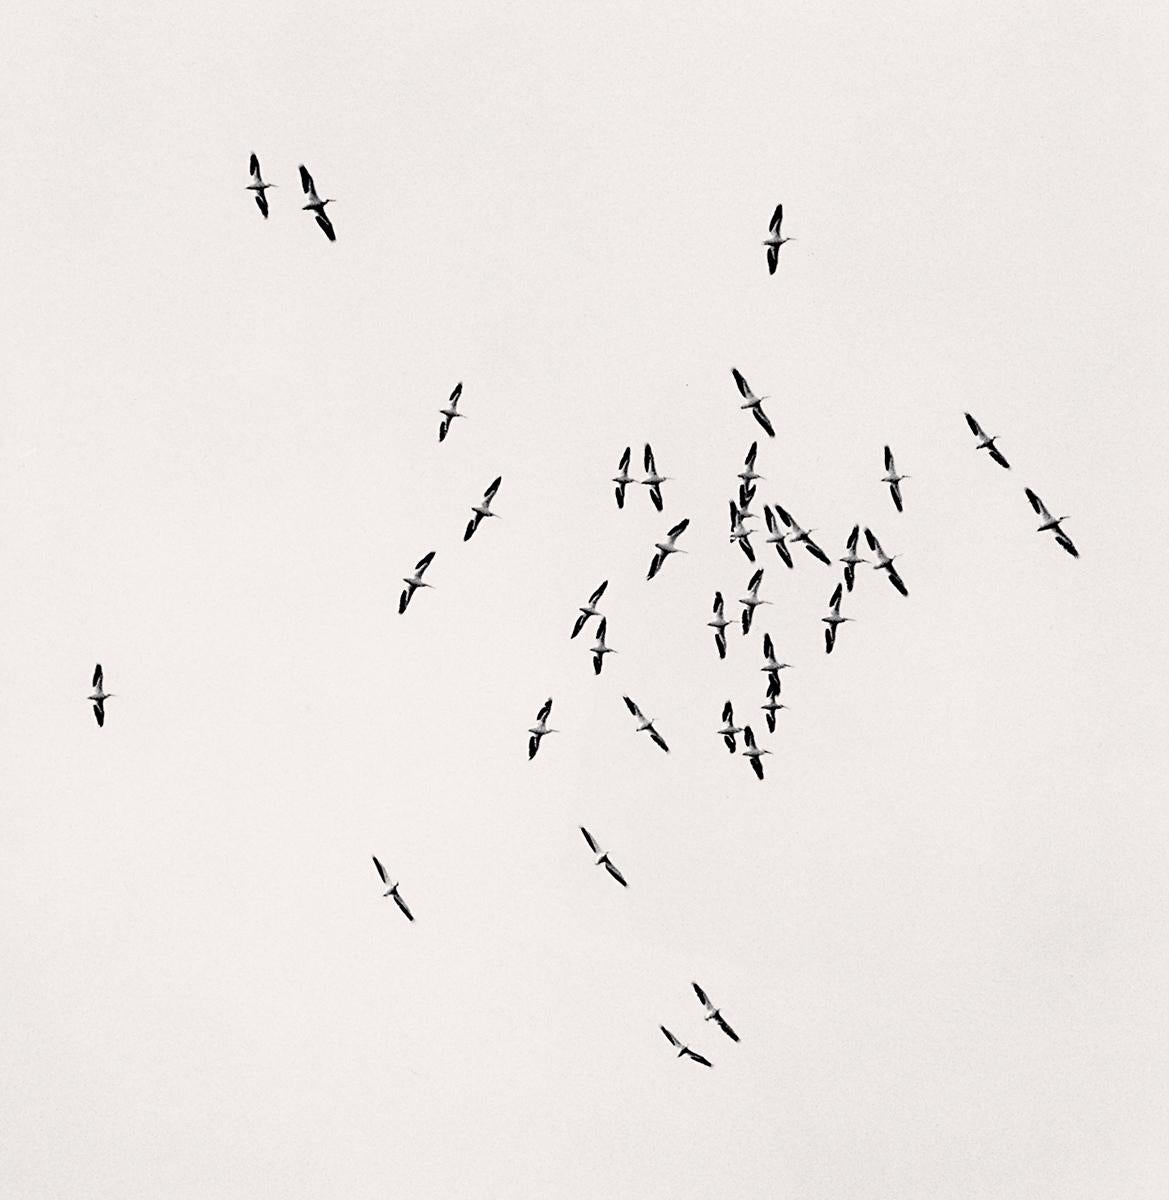 Thirty Six Birds, Isle of Skye, Scotland von Michael Kenna zeigt einen Vogelschwarm, der vor einem hellen Himmel über die Insel fliegt.

Sepia getönter Gelatinesilberdruck
Bildgröße: 8 x 7,75 Zoll.
Größe des Passepartouts: 20 x 16 Zoll.
Ausgabe